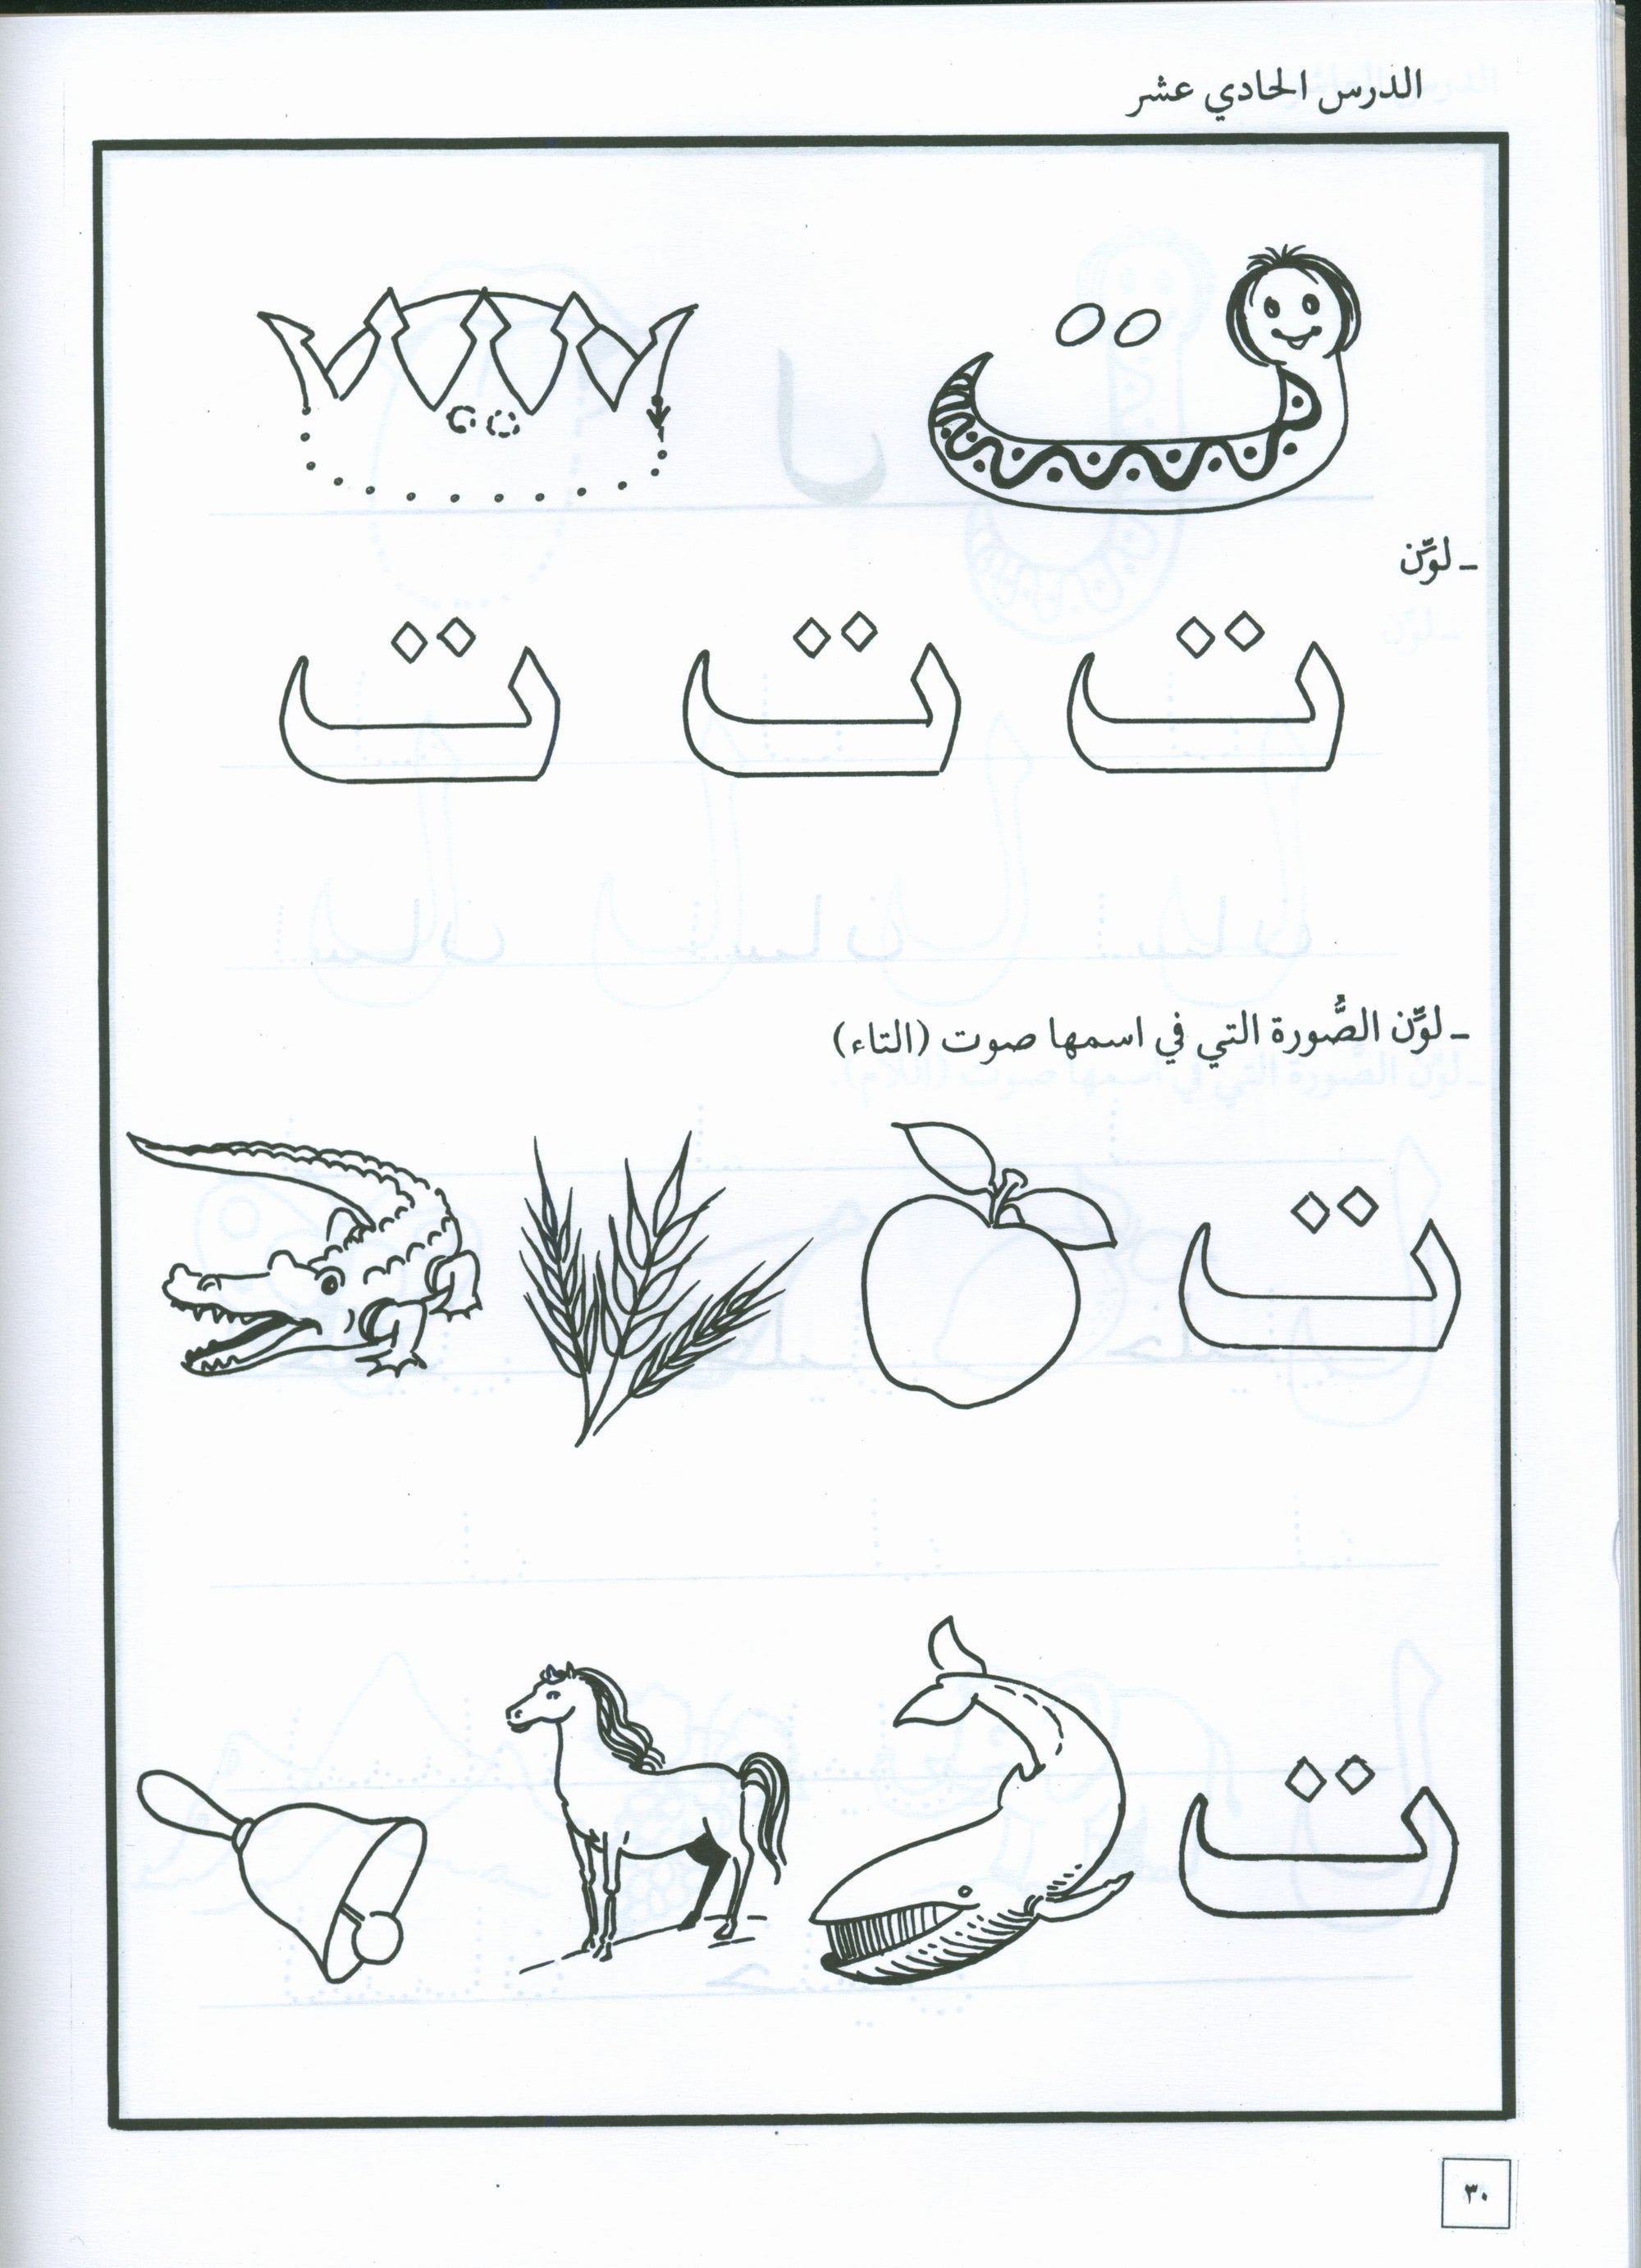 Hurry to Arabic Language Workbook KG 2 هيا الى العربية تمارين تمهيدي